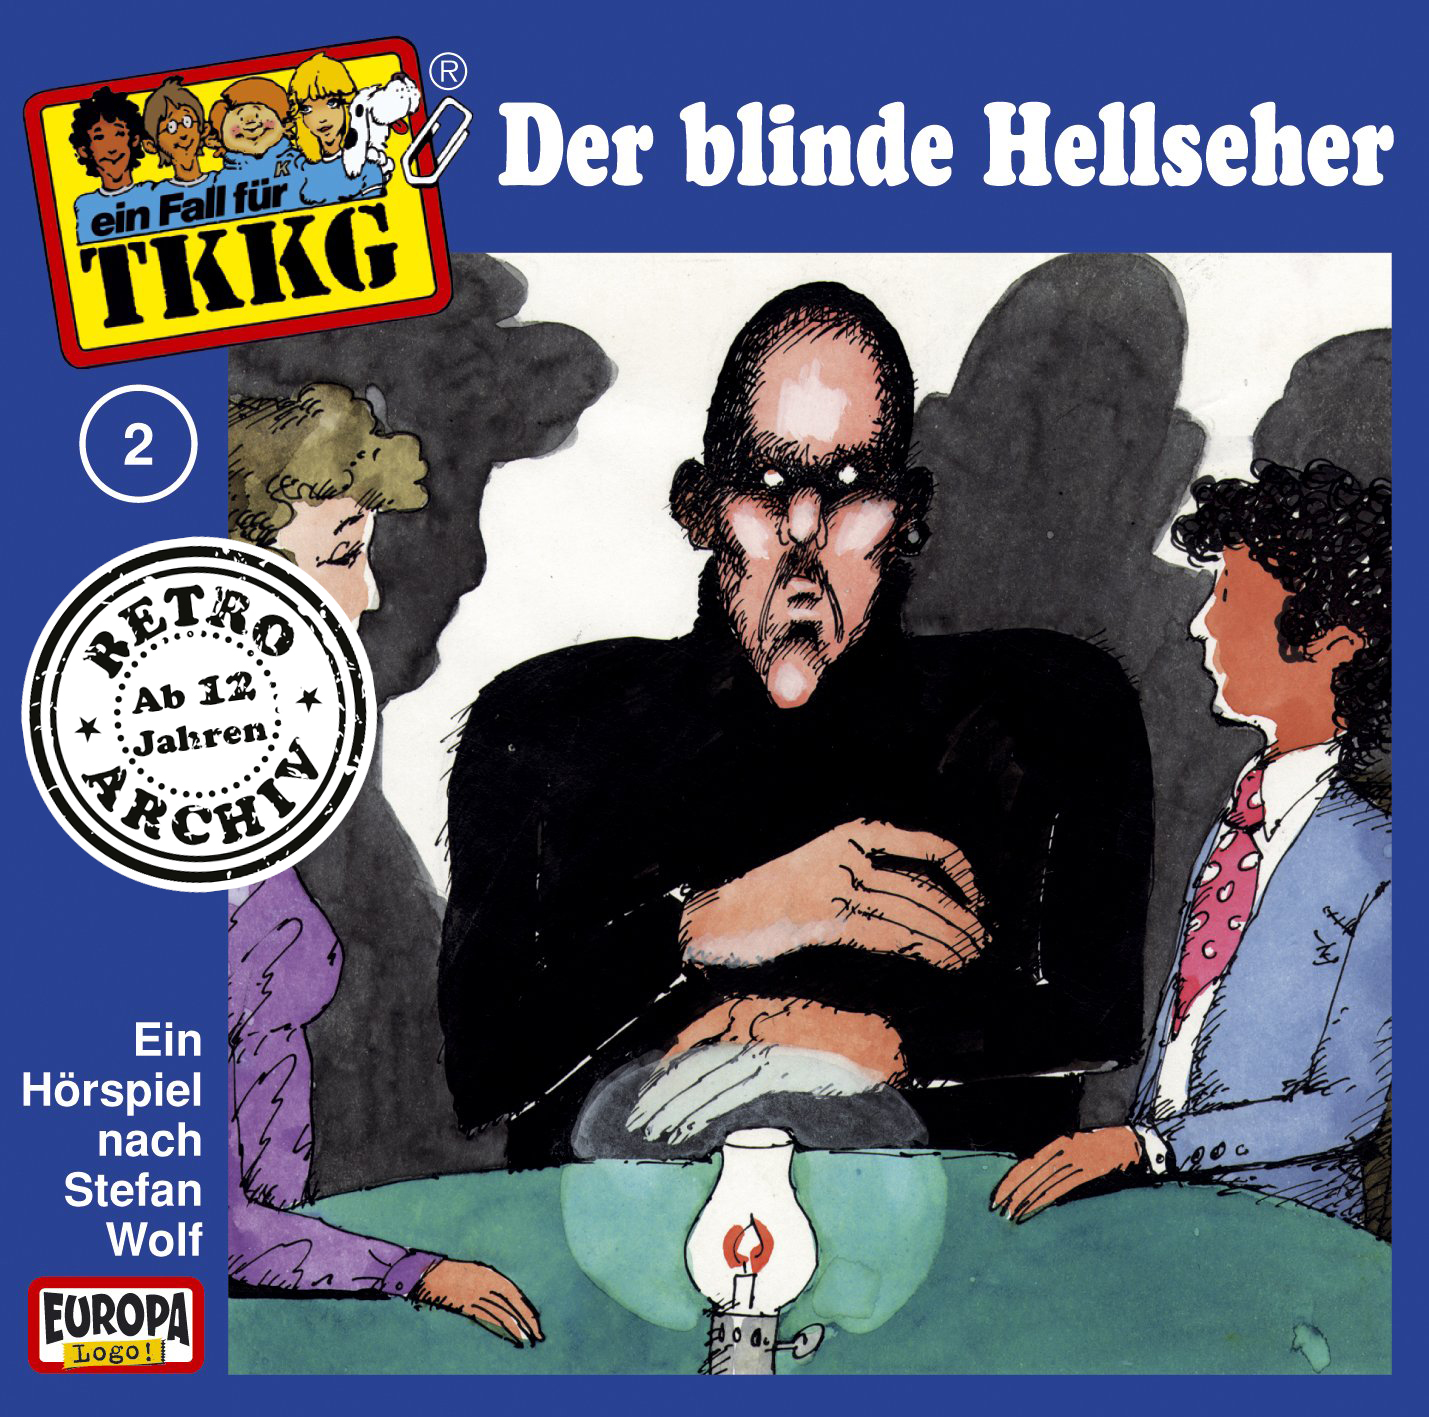 TKKG Retro-Archiv - Der blinde Hellseher